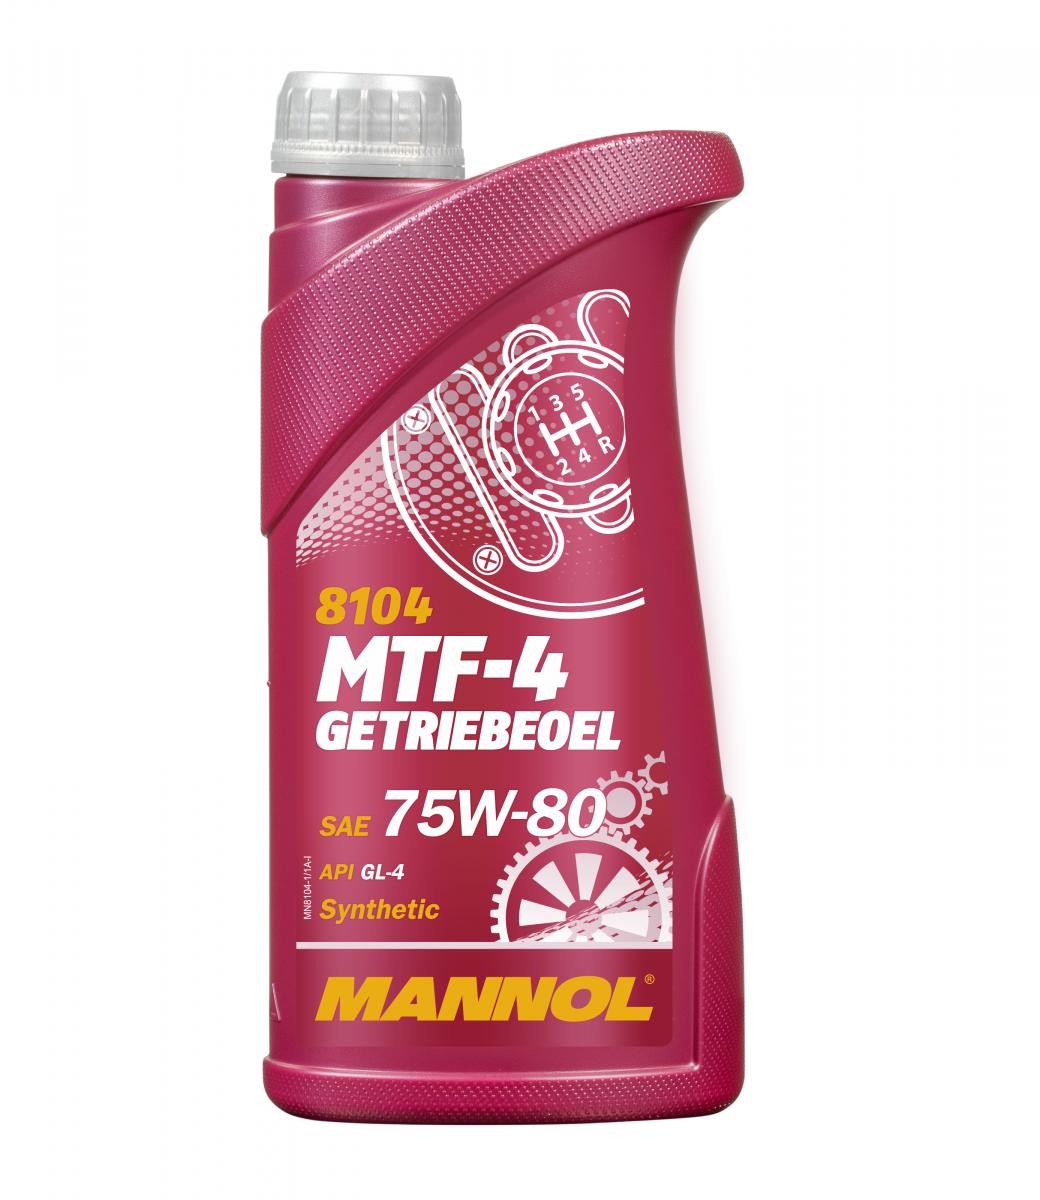 MANNOL MTF-4, GL-4 MN8104-1 VICTORY Getriebeöl Motorrad zum günstigen Preis